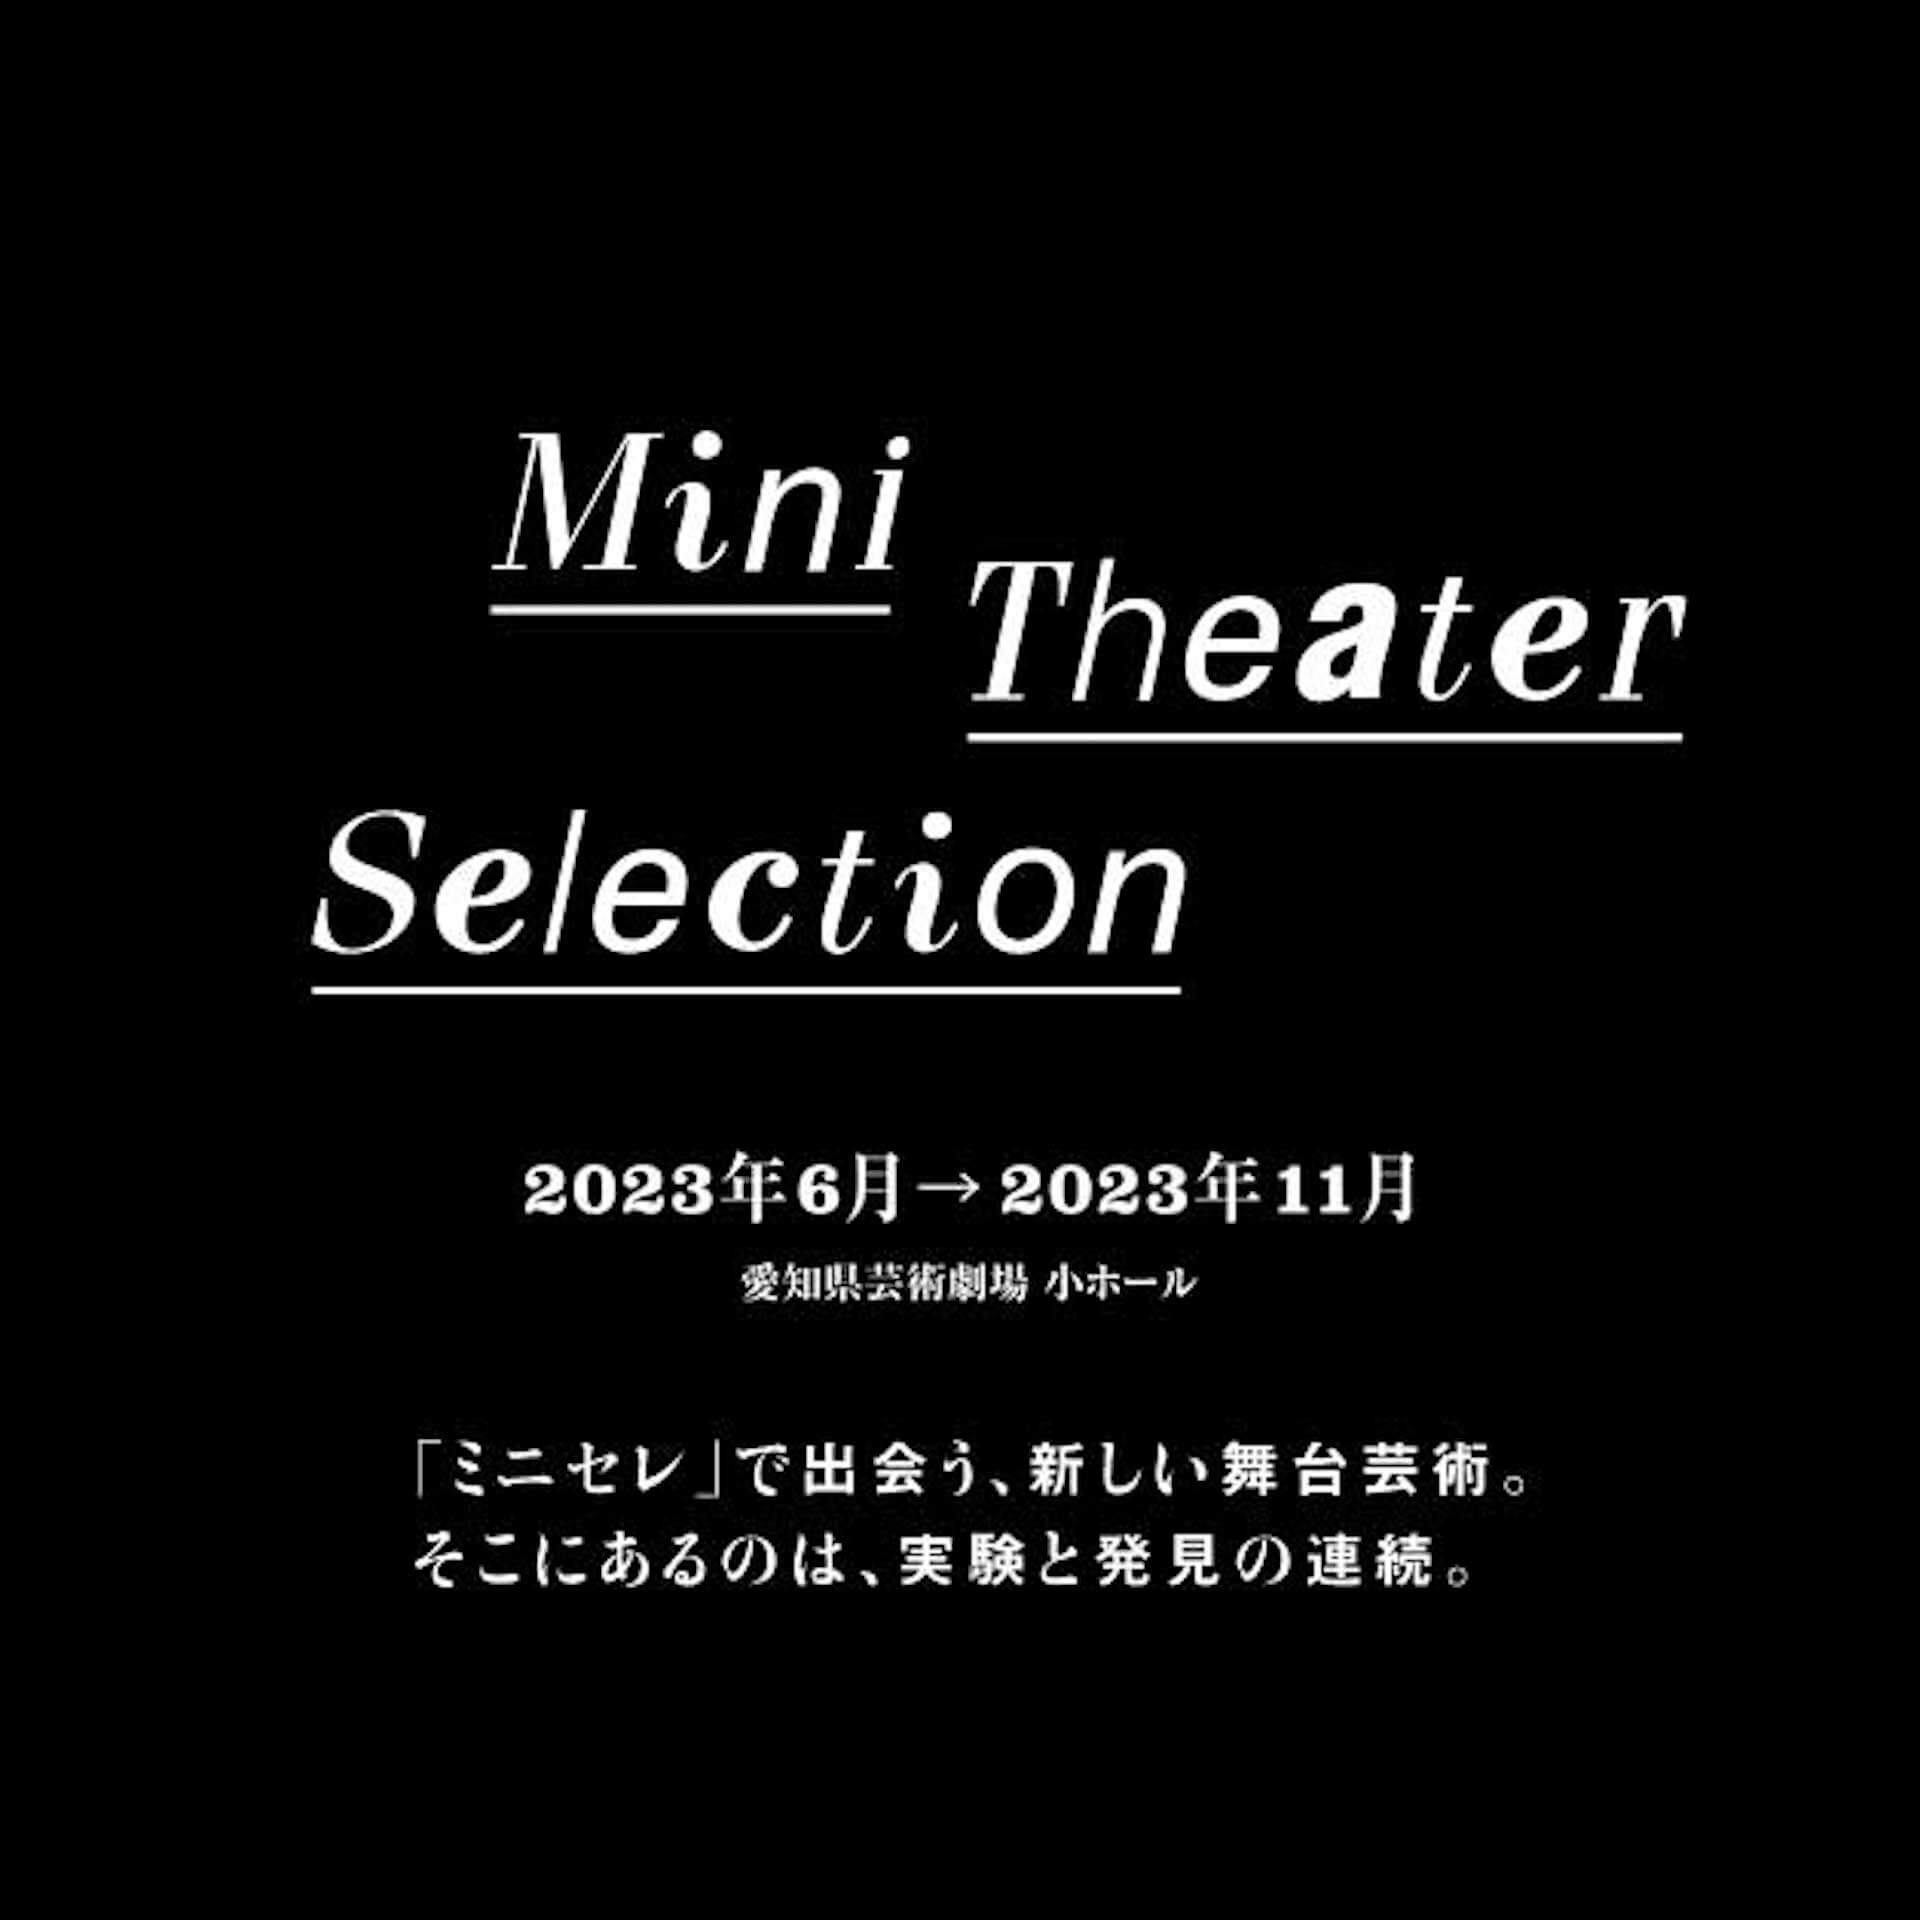 愛知県芸術劇場 ミニセレ 2023